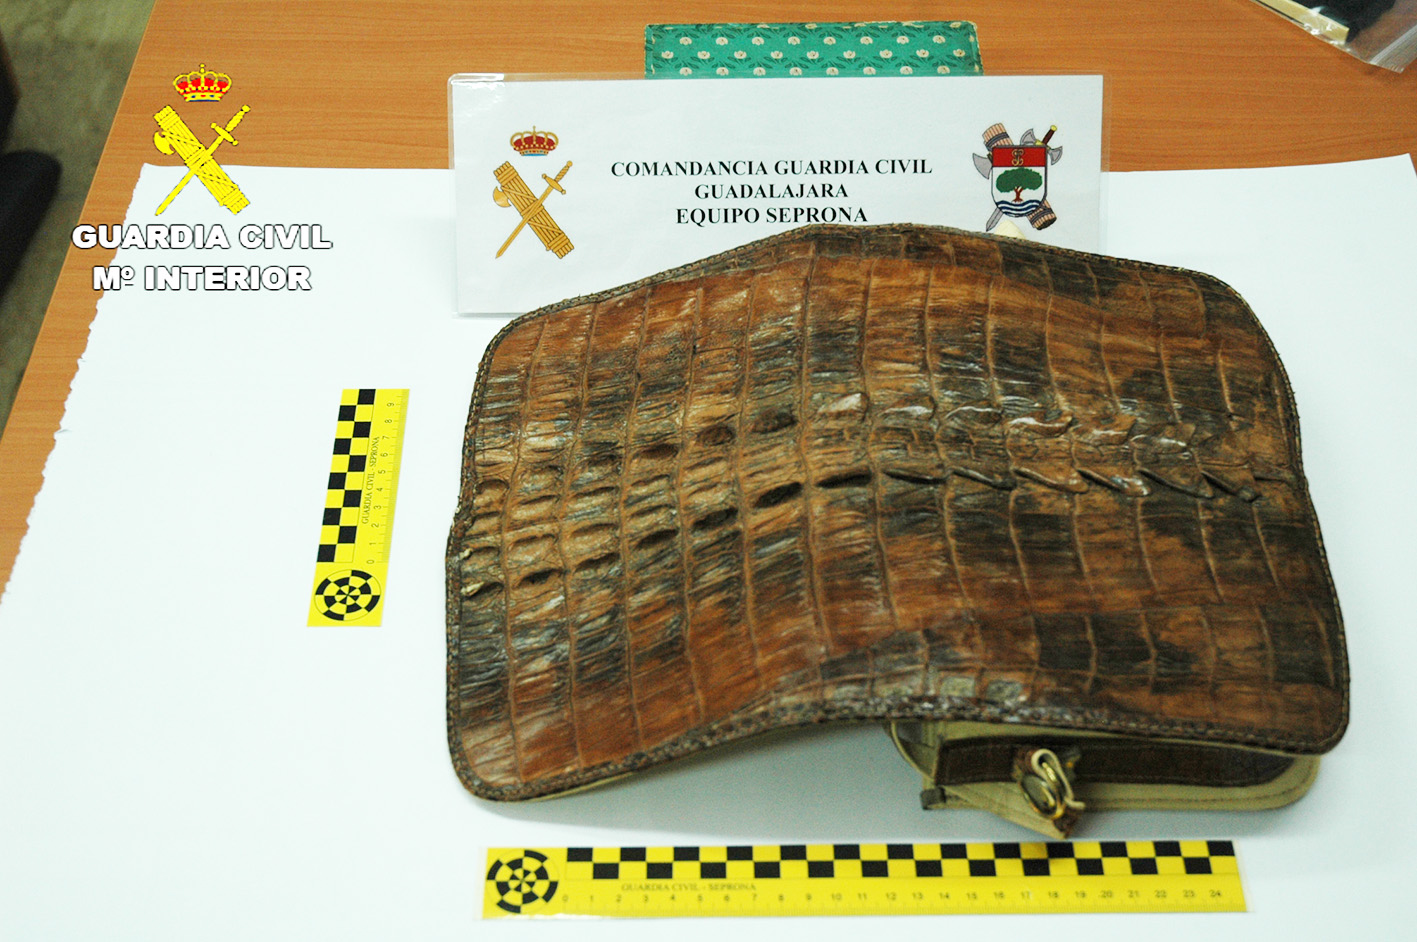 Este bolso de piel de cocodrilo del Nilo fue incautado en la provincia de Guadalajara.